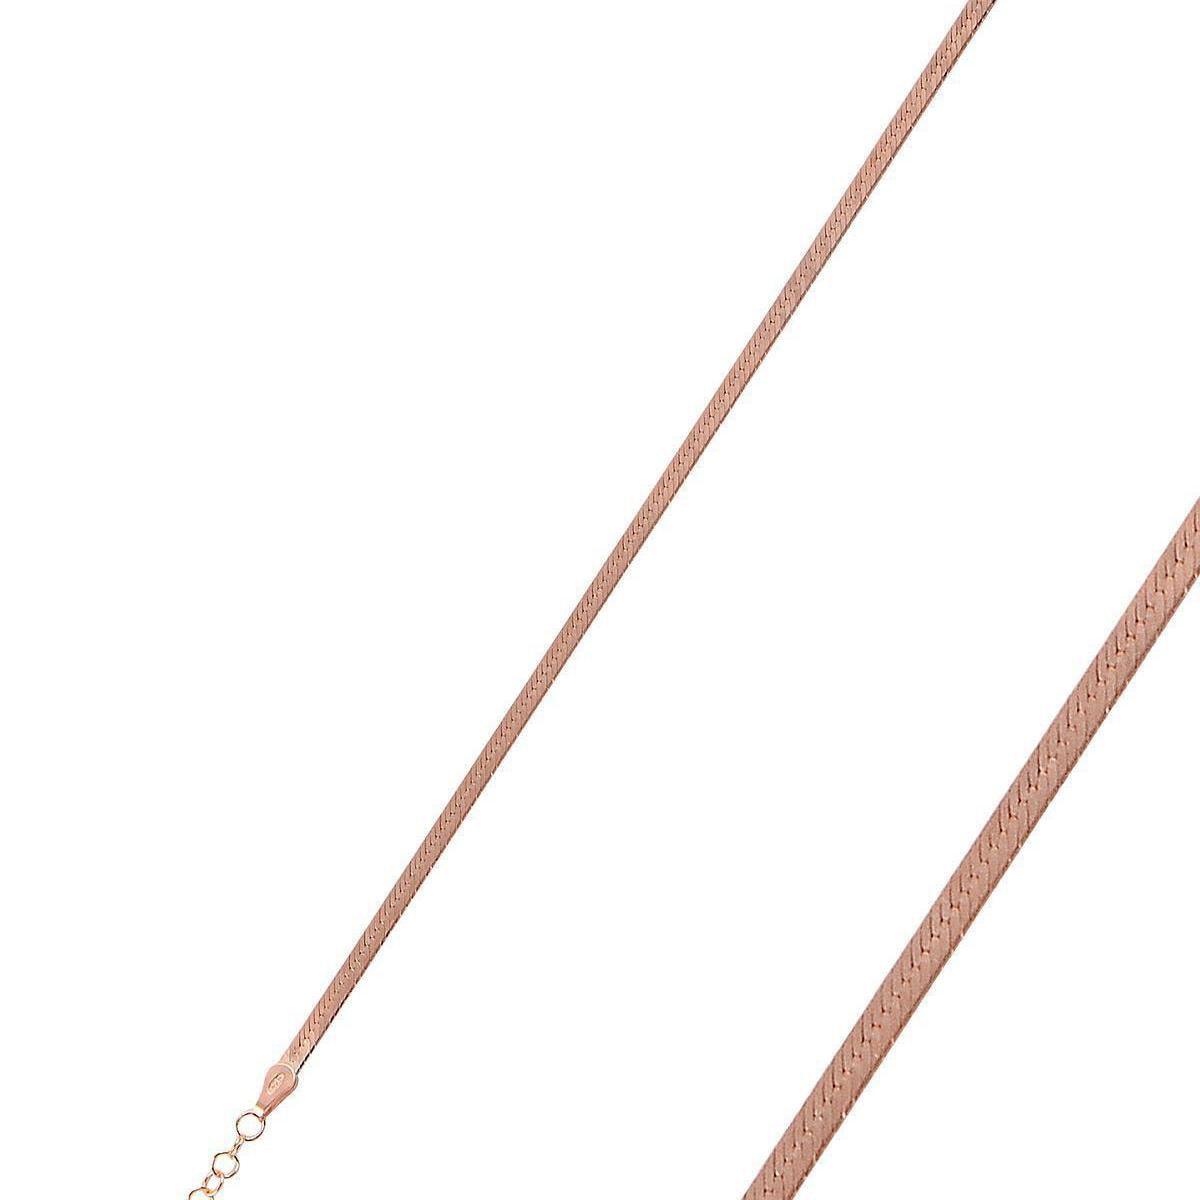 Italian Design Rose Gold Snake Chain Bracelet • Gift For Wife - Trending Silver Gifts